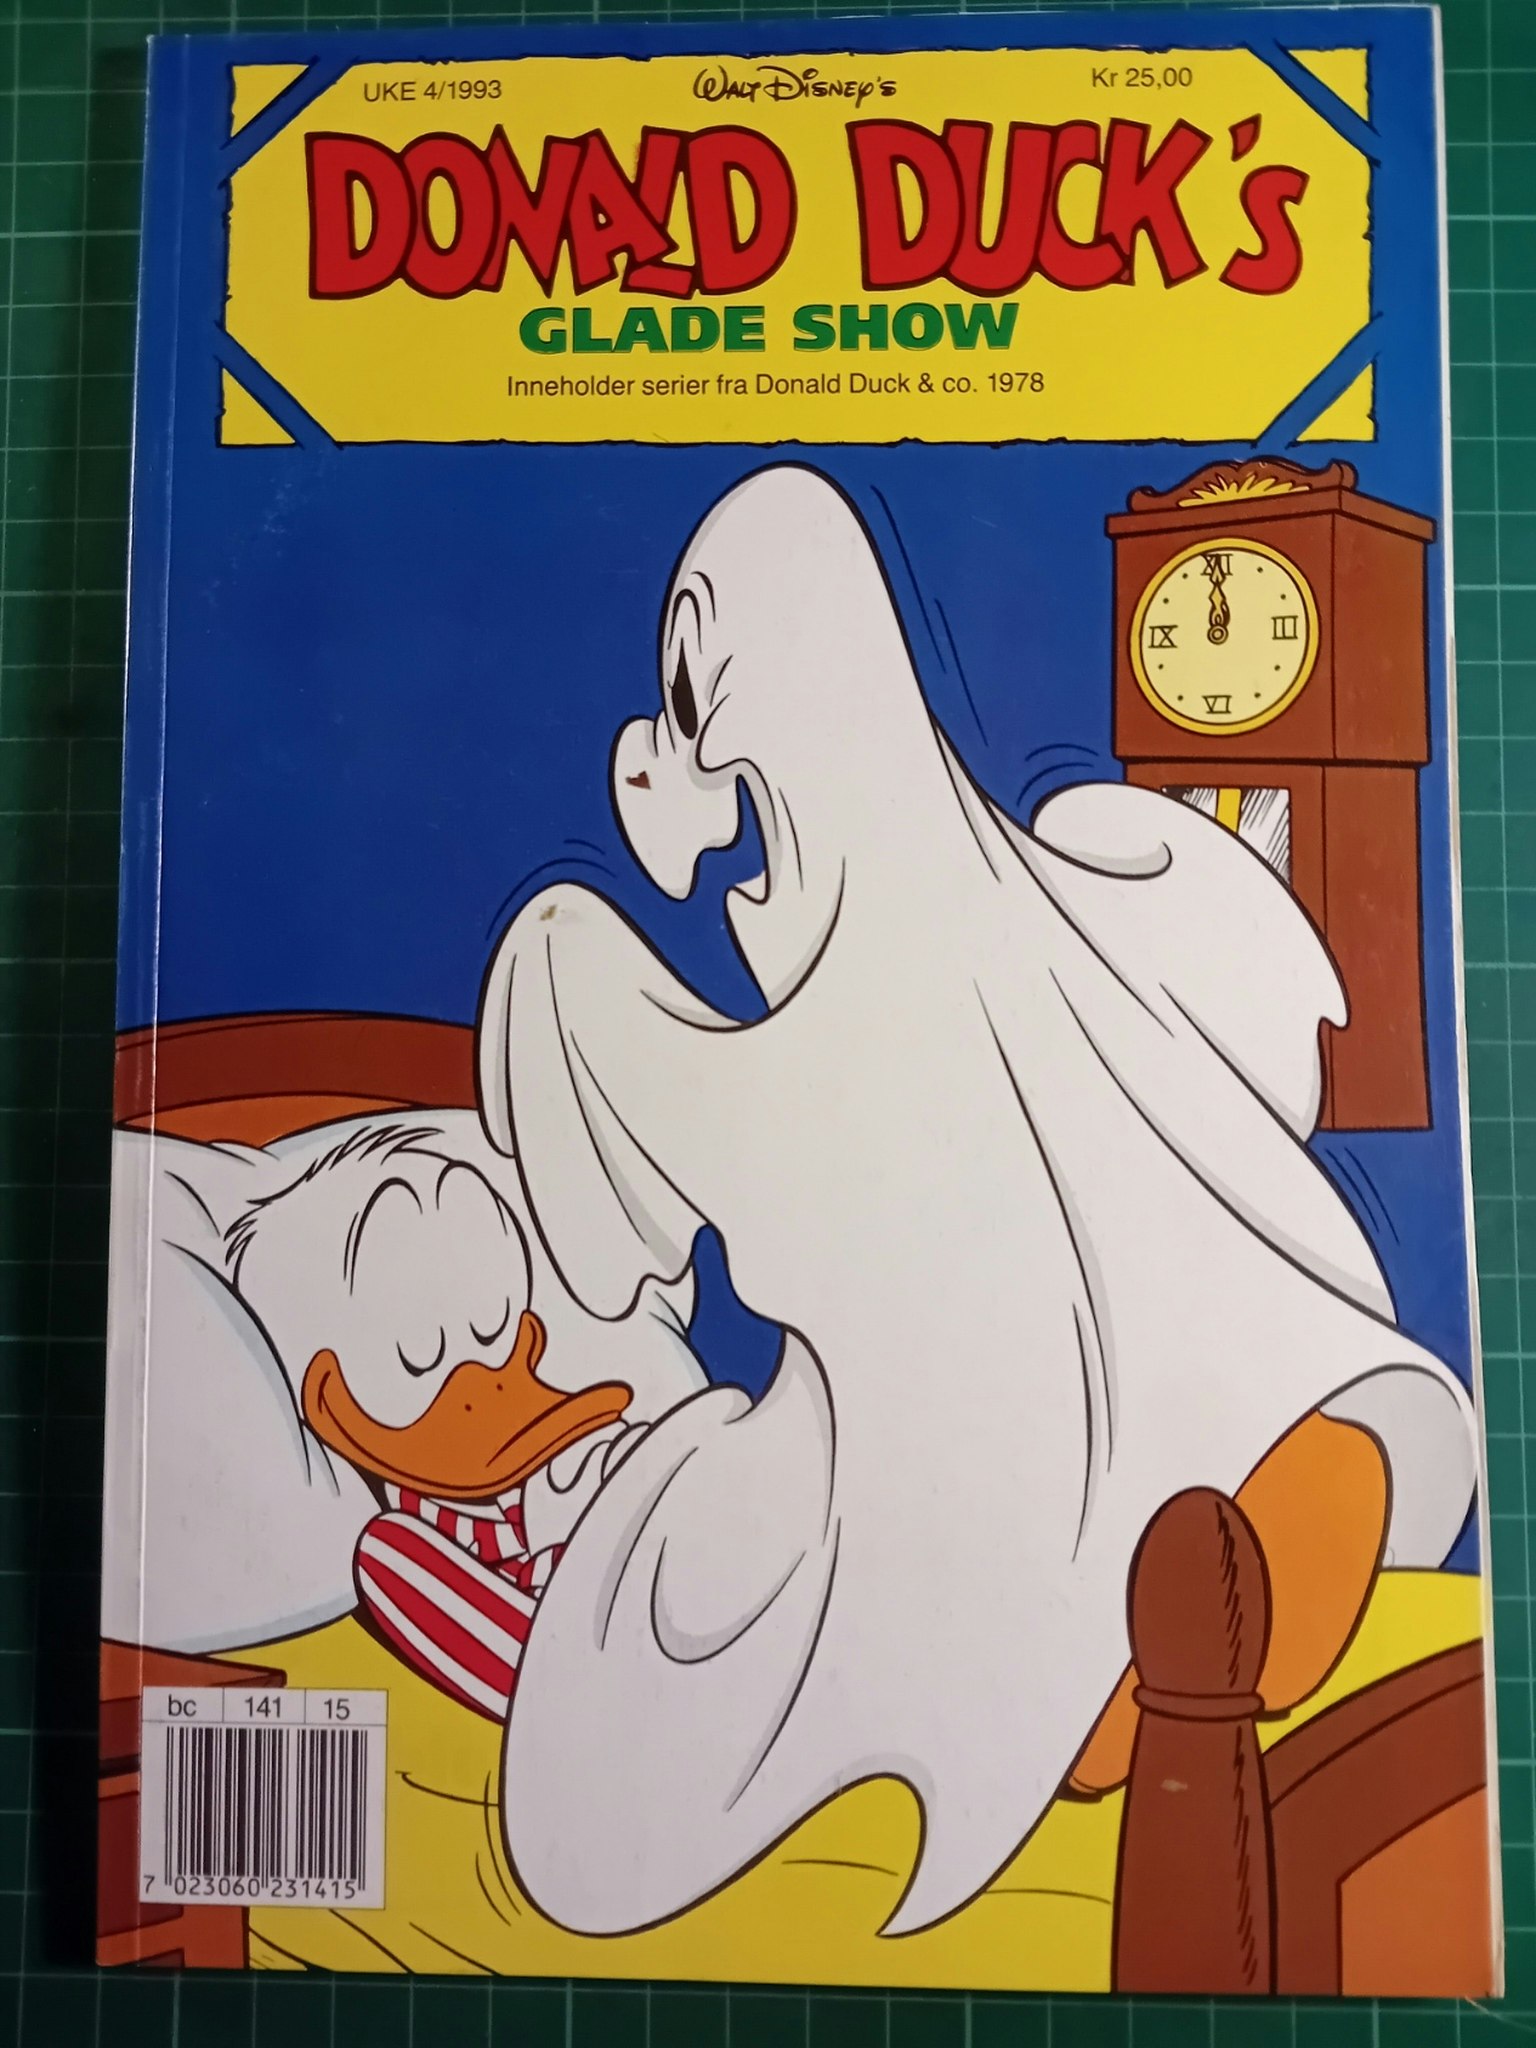 Donald Ducks 1993 Glade show